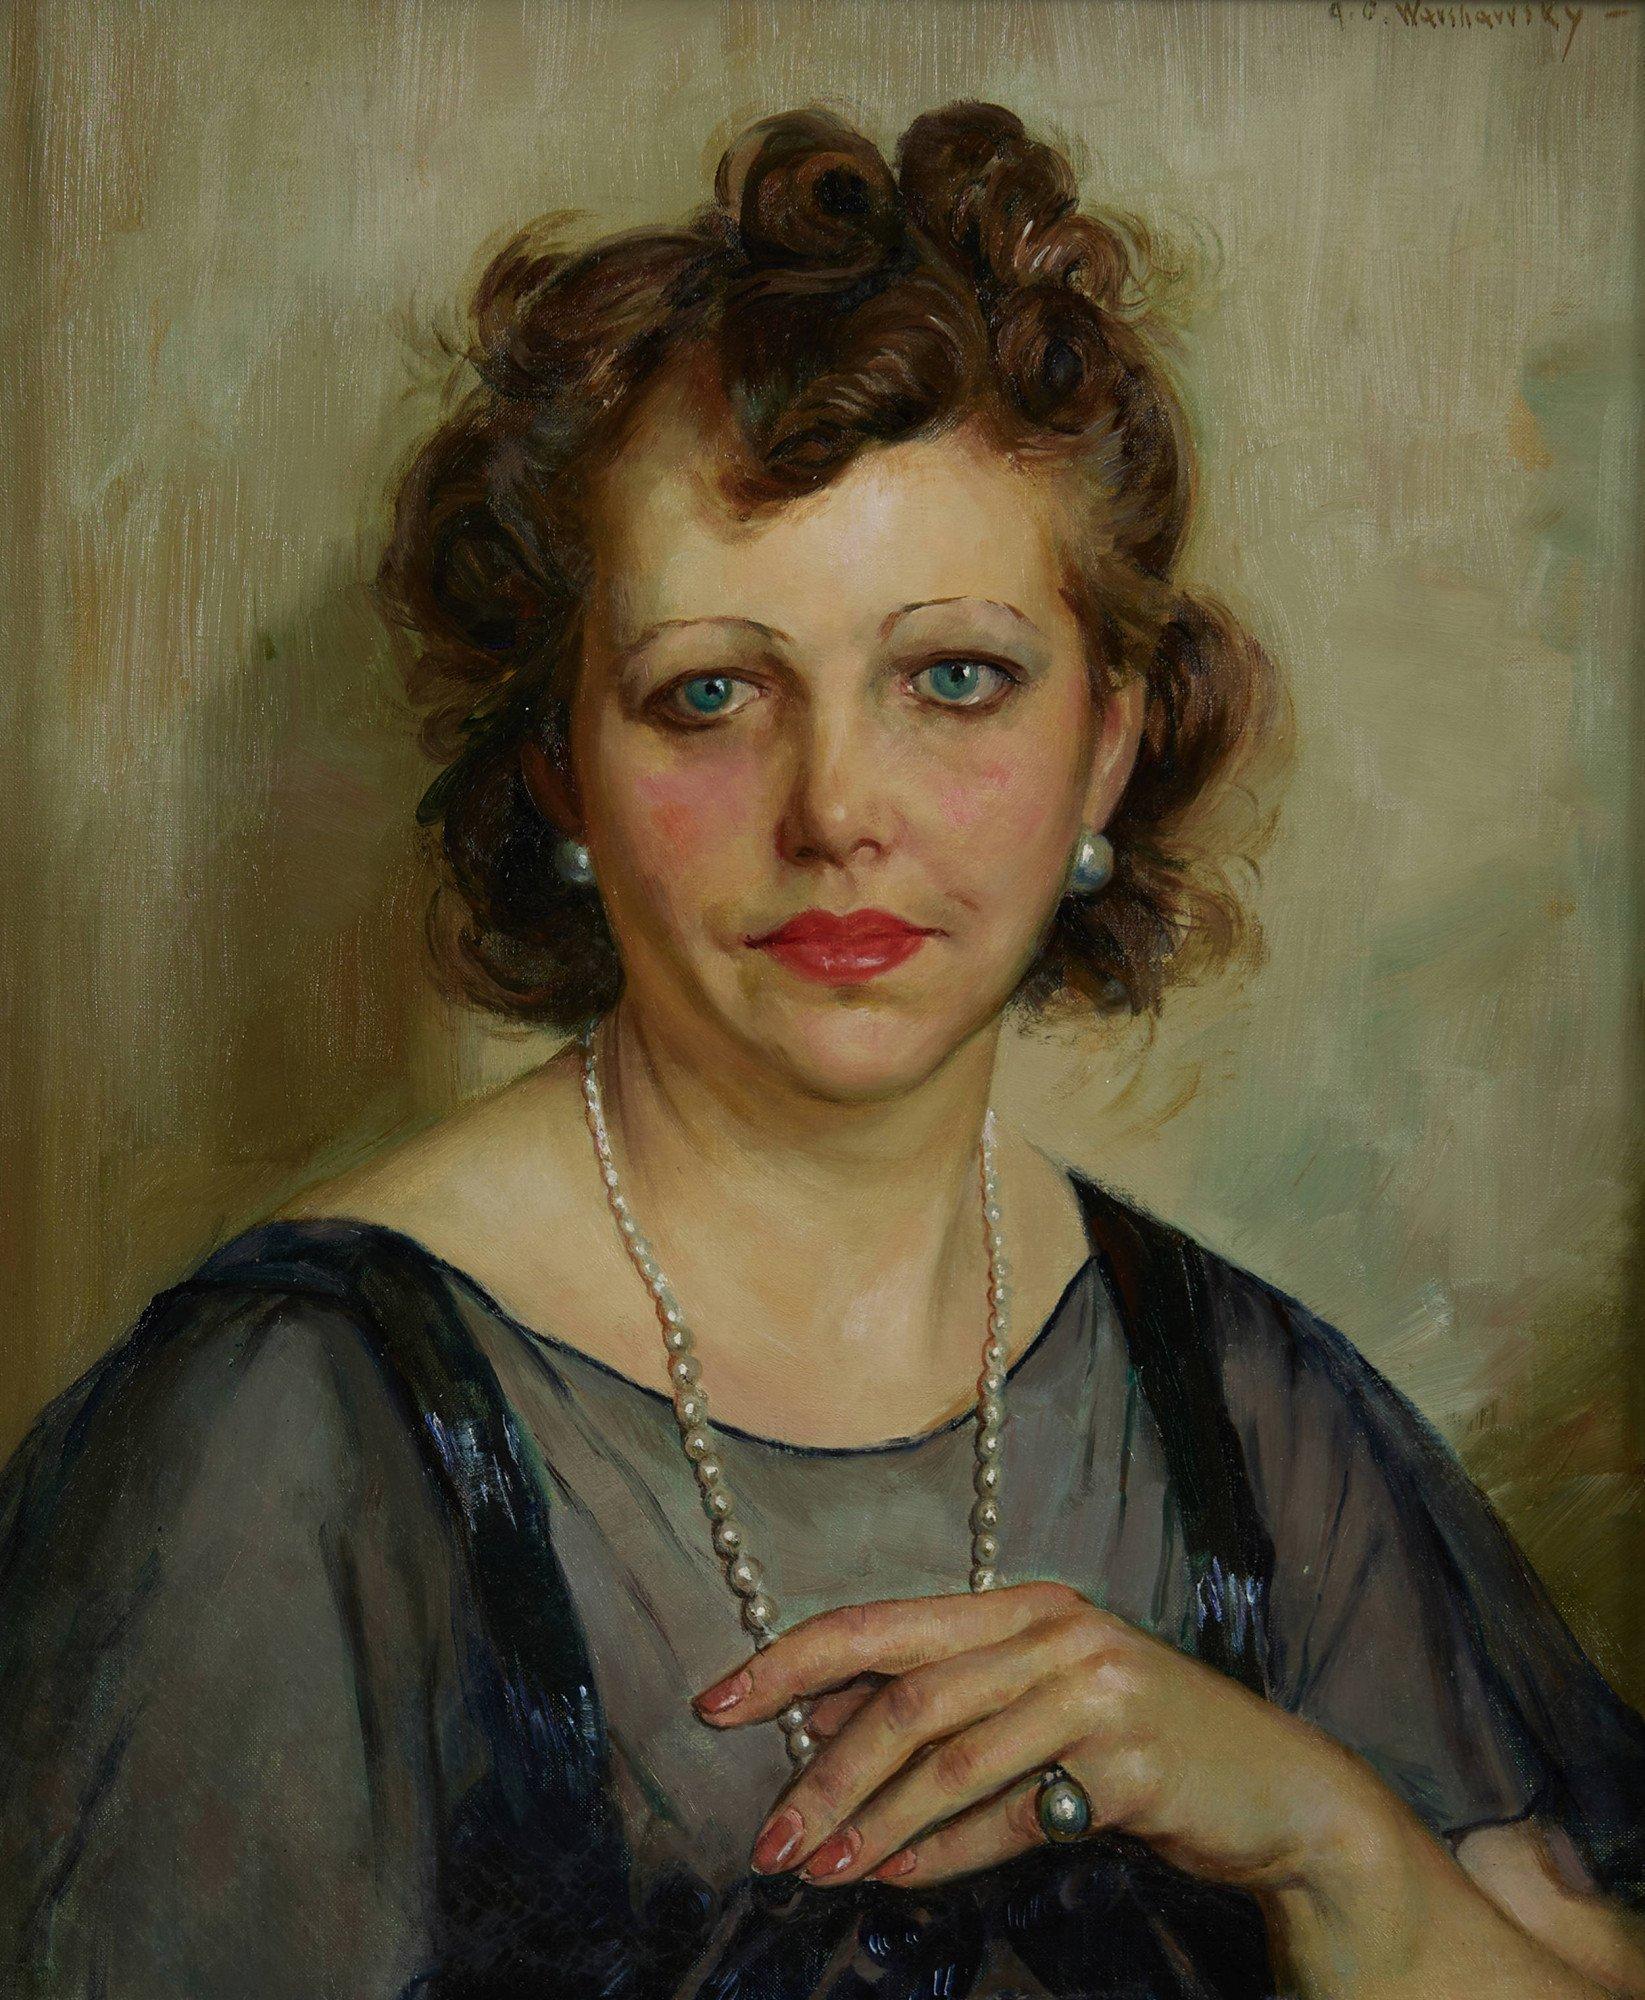 Figurative Painting Abel Warshawsky - The Antique Dealer, Portrait de femme à l'huile du 20e siècle, école de Cleveland